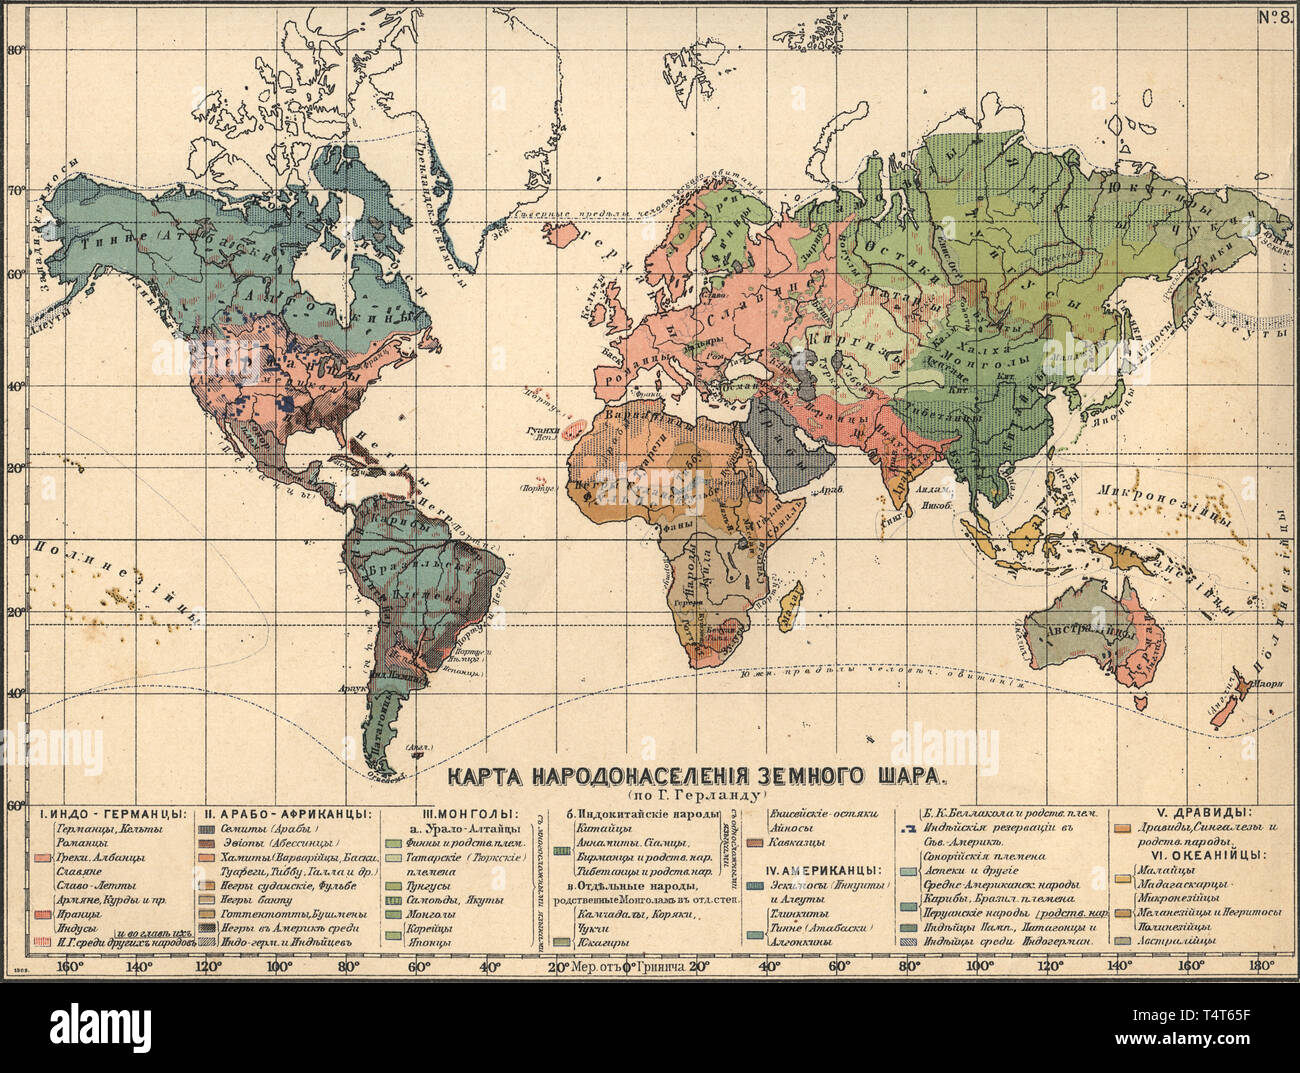 world map with latitude and longitude grid